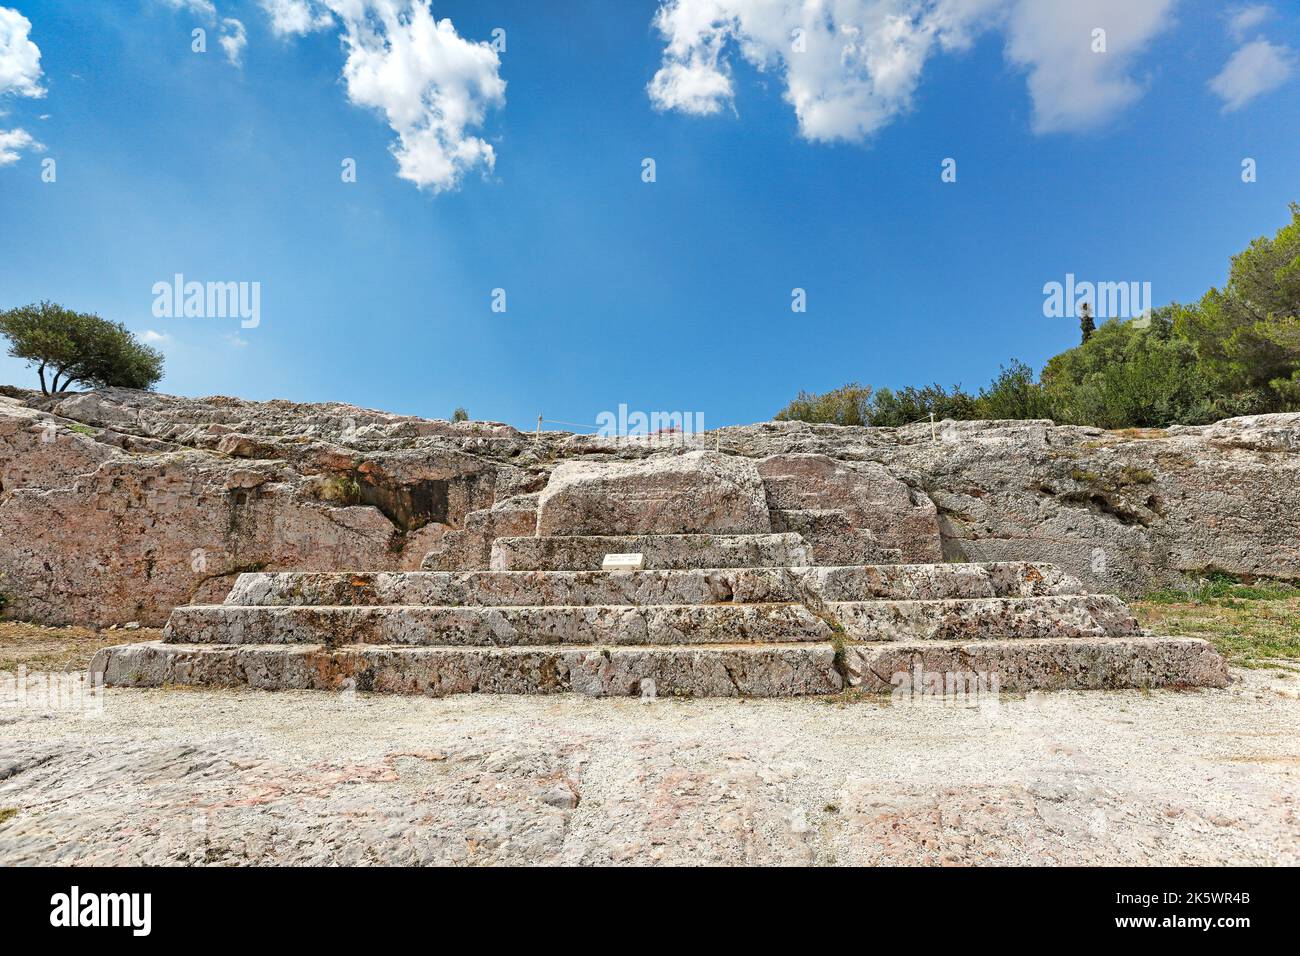 Il Pnyx (507 a.C.) con i gradini scolpiti della piattaforma del parlatore (bema) vicino all'Acropoli ateniese, Grecia. Pericle, Demostene ecc. hanno parlato qui Foto Stock